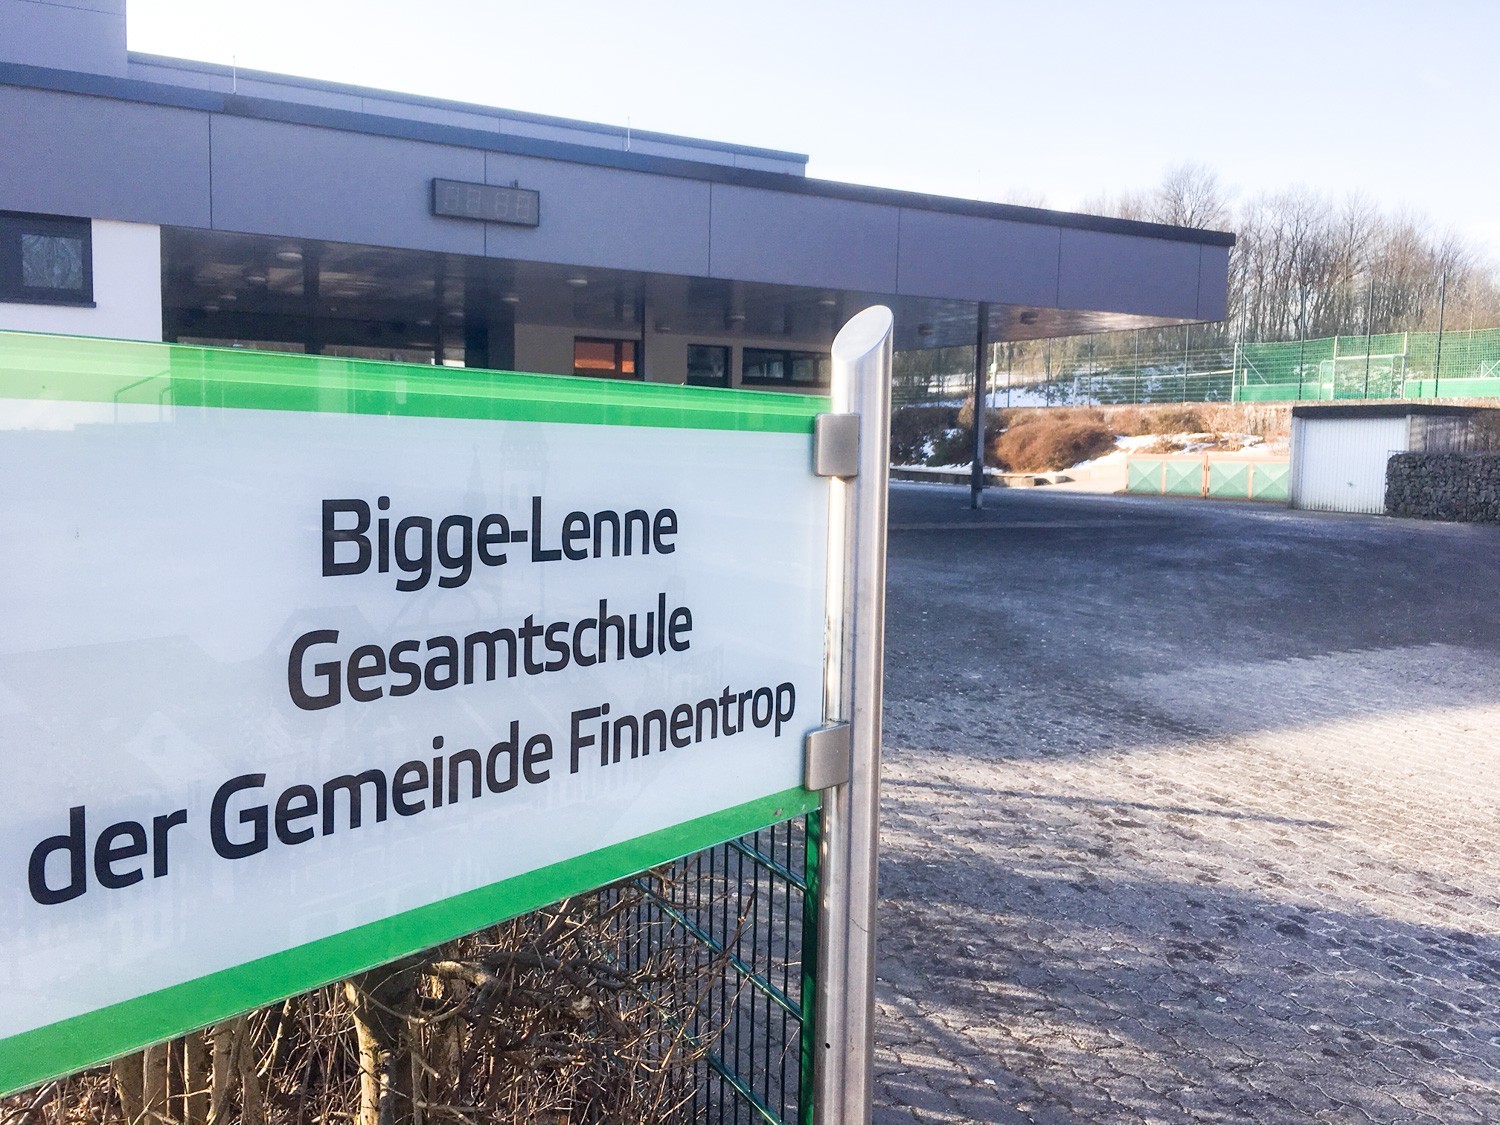 Bigge-Lenne-Gesamtschule Finnentrop von Archivfoto